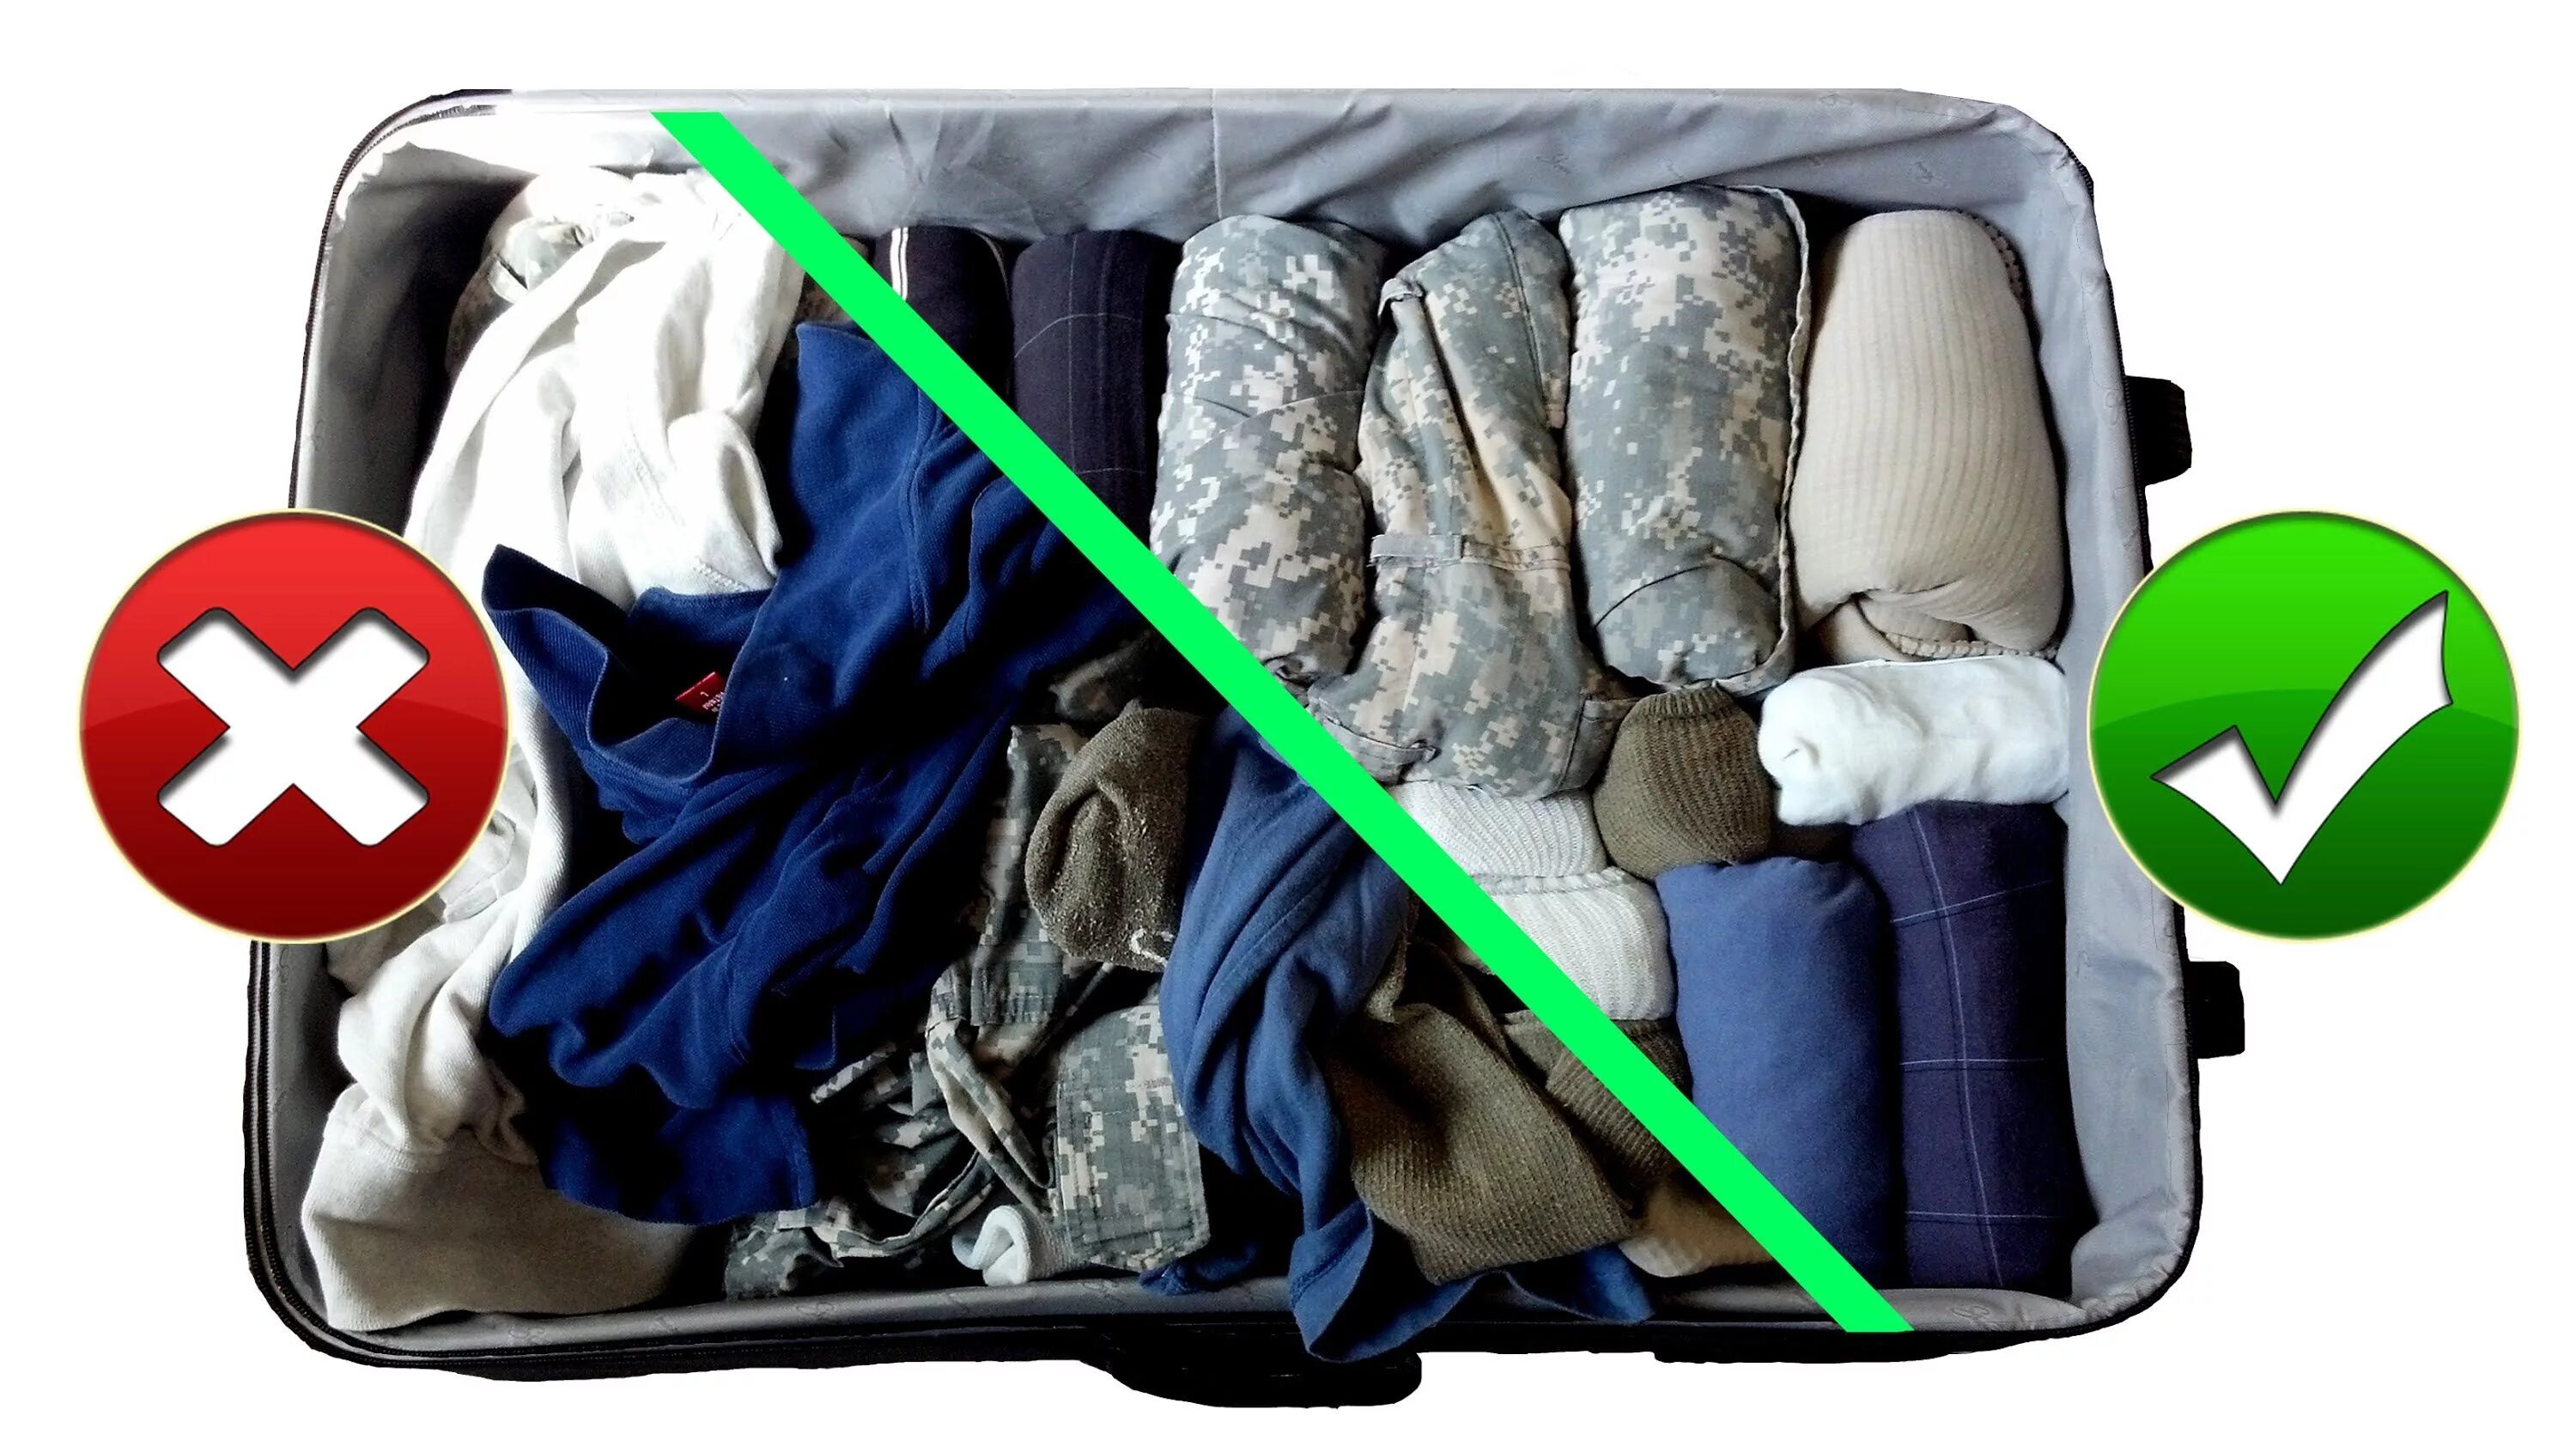 Укладка вещей в чемодан. Компактная упаковка вещей в чемодан. Вещи в путешествие. Упаковать вещи в чемодан компактно.